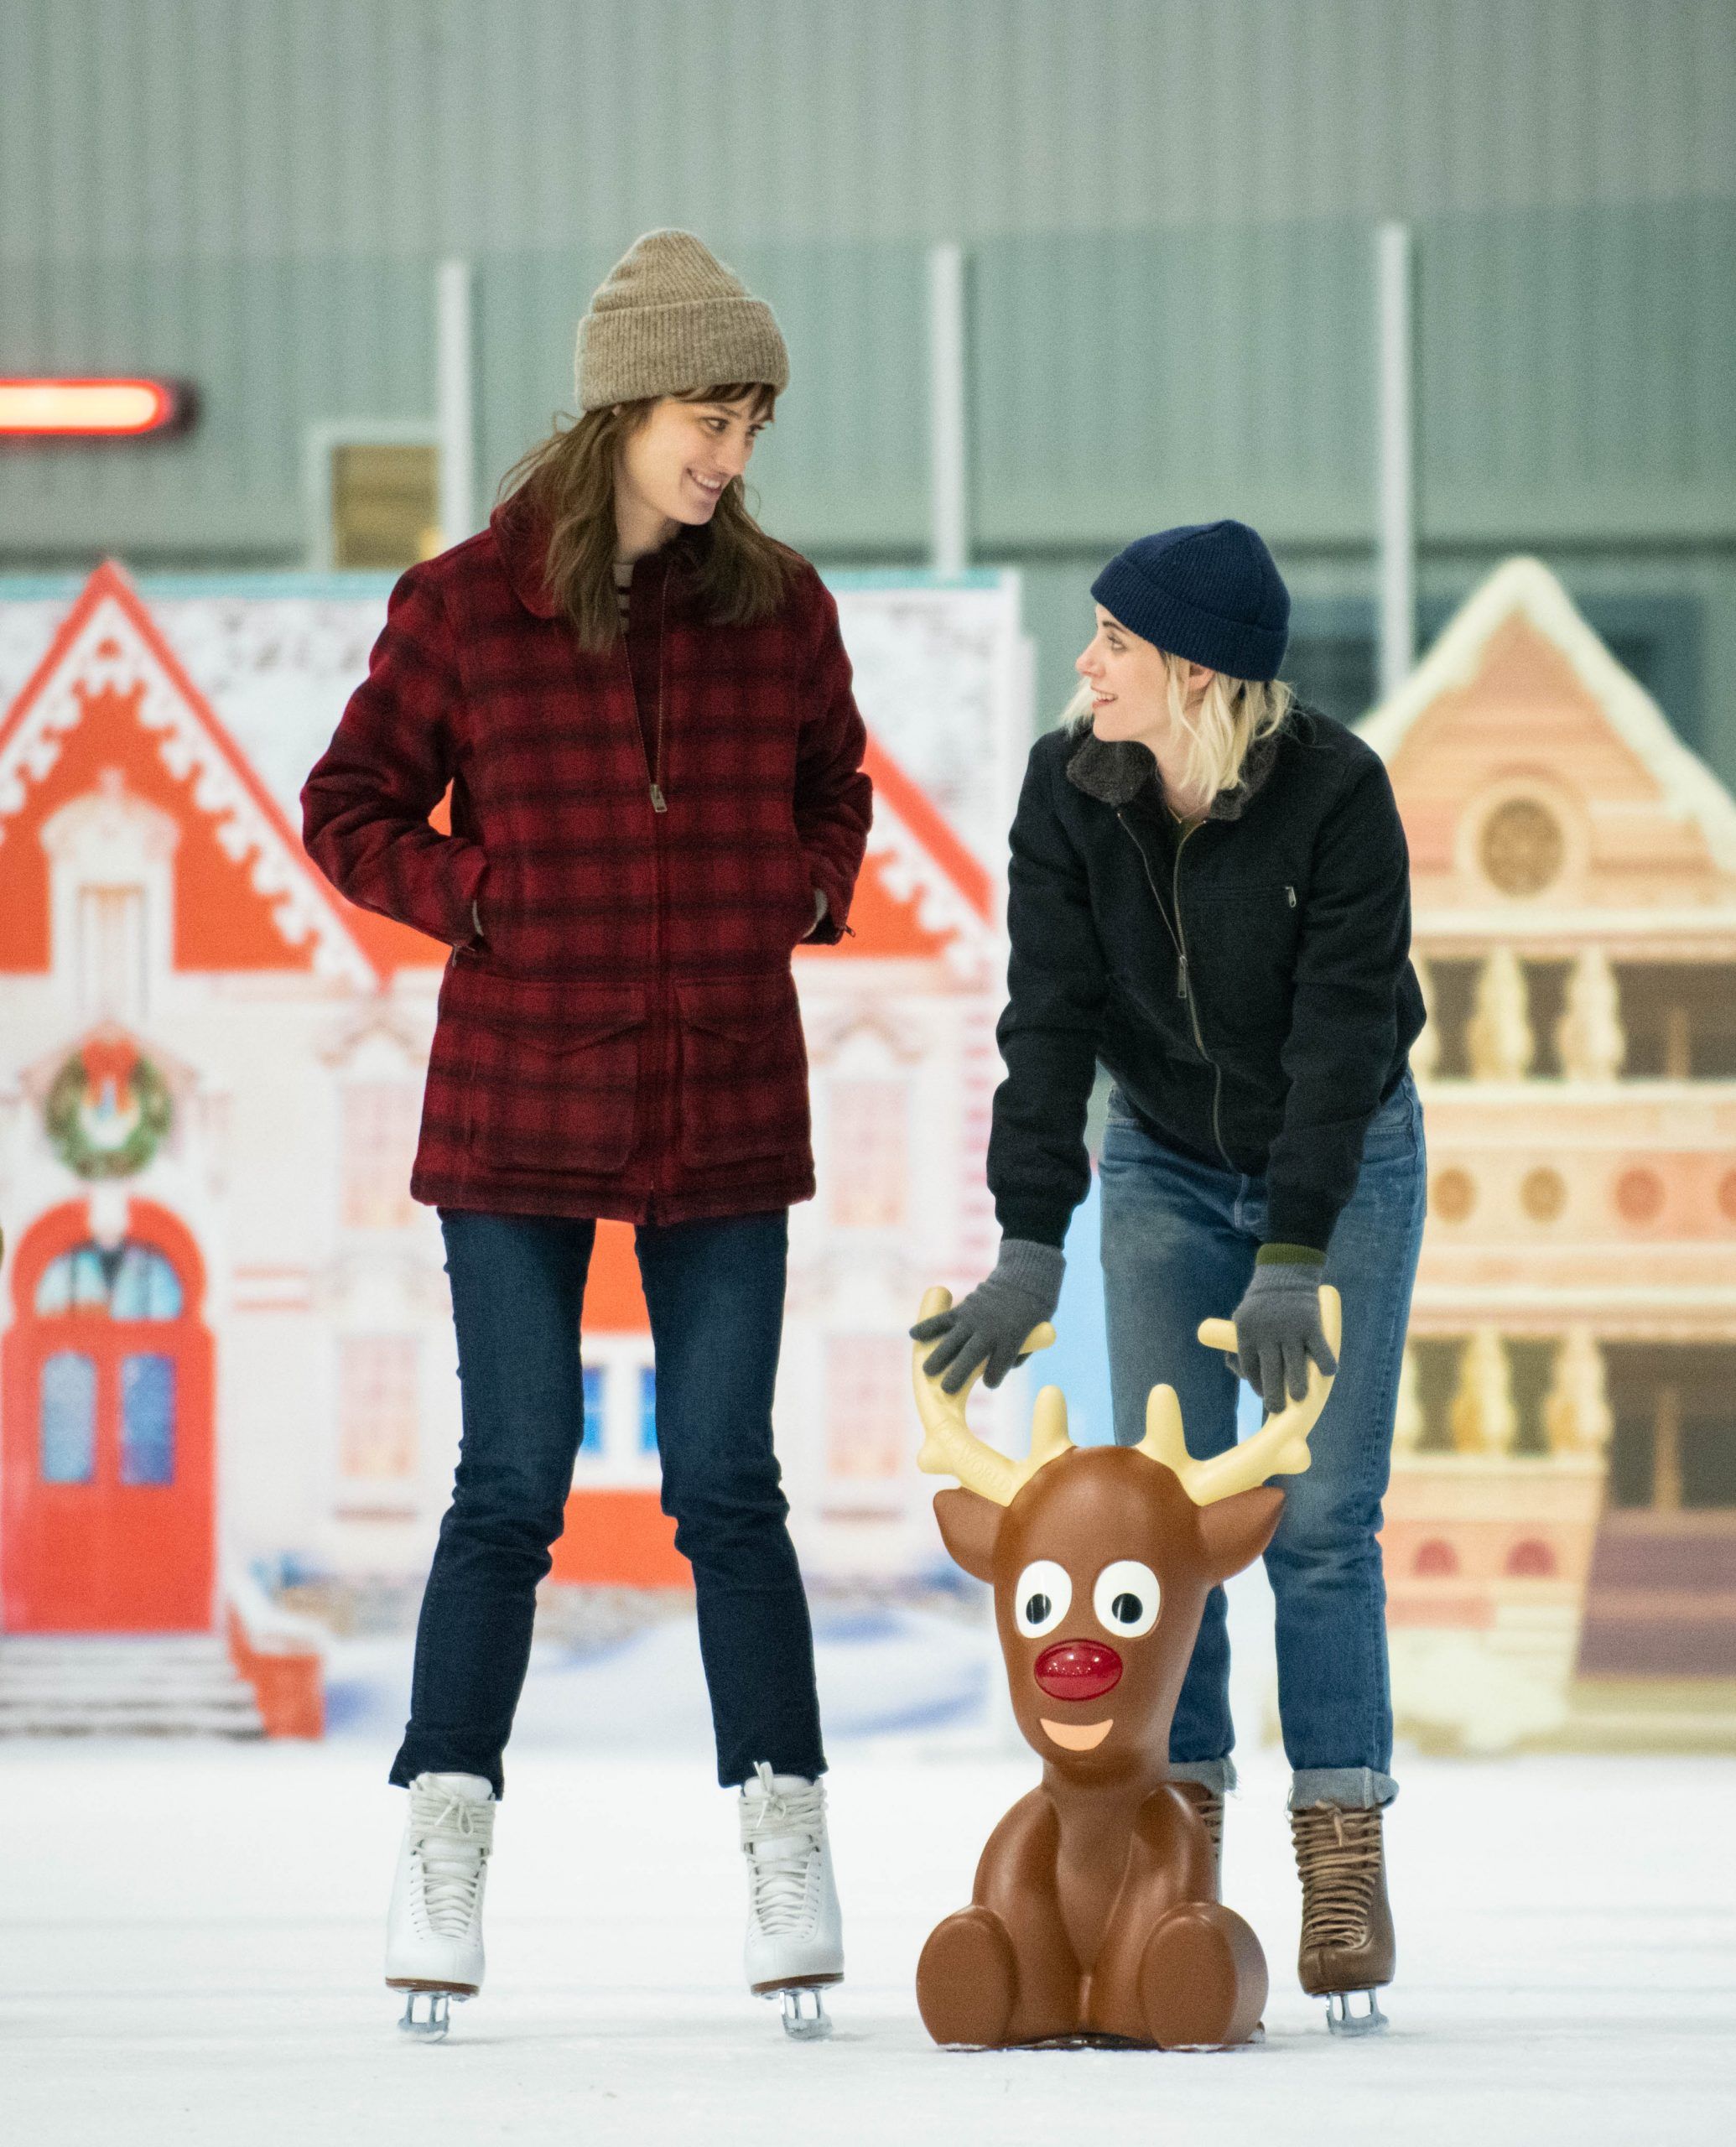 Kristen Stewart and Mackenzie Davis Pair Up in Happiest Season Images |  Collider